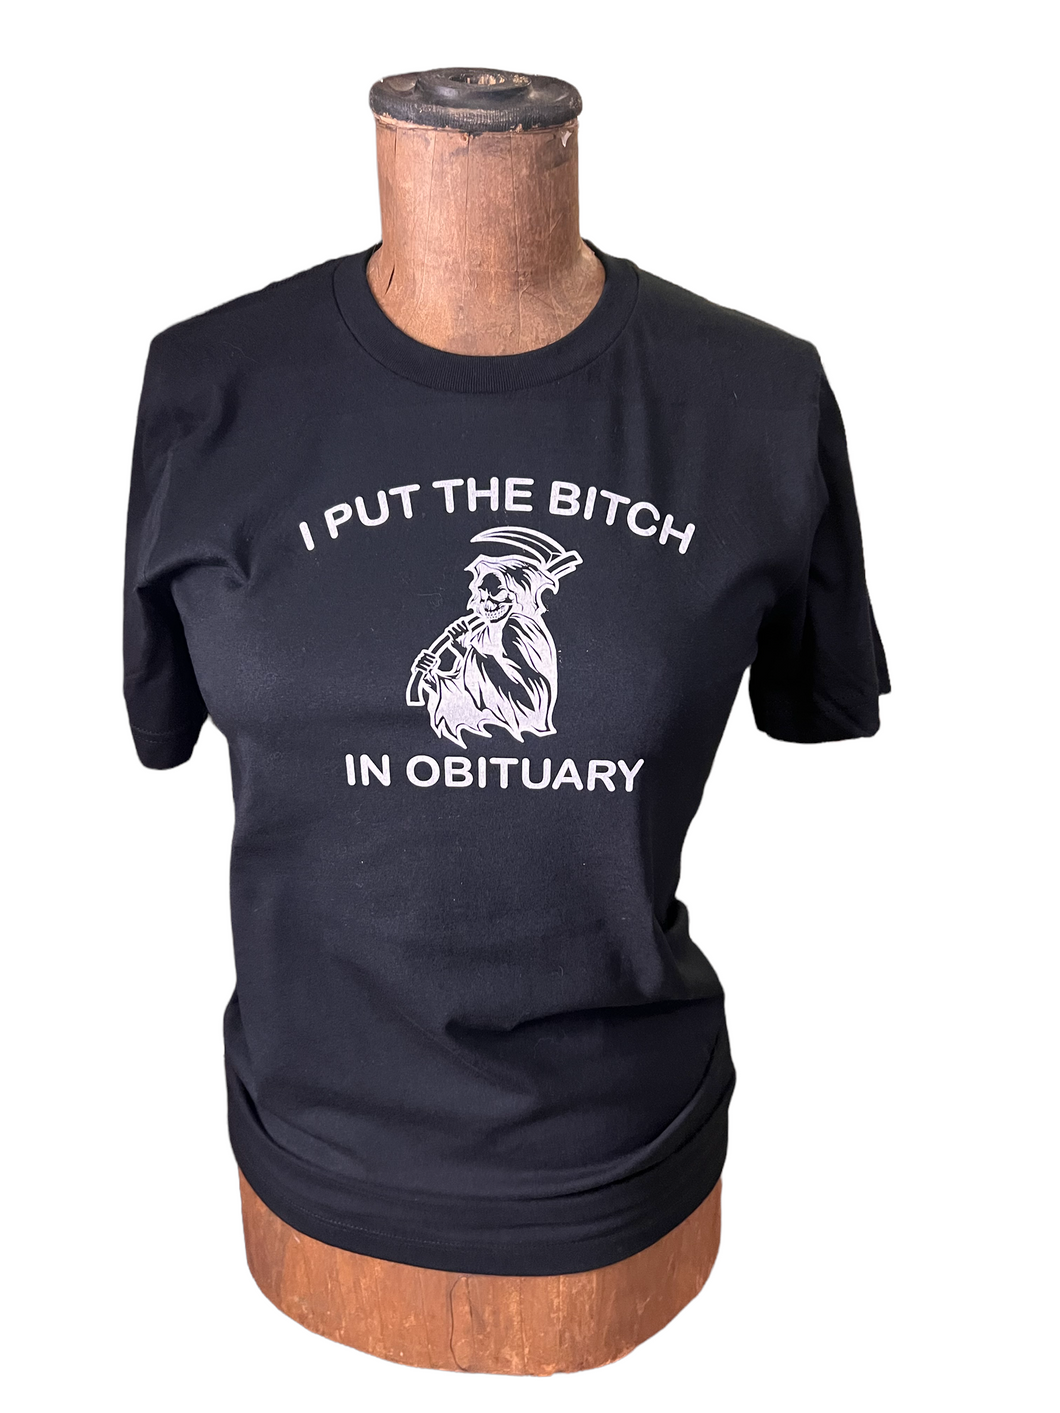 I put the bitch in obituary t-shirt